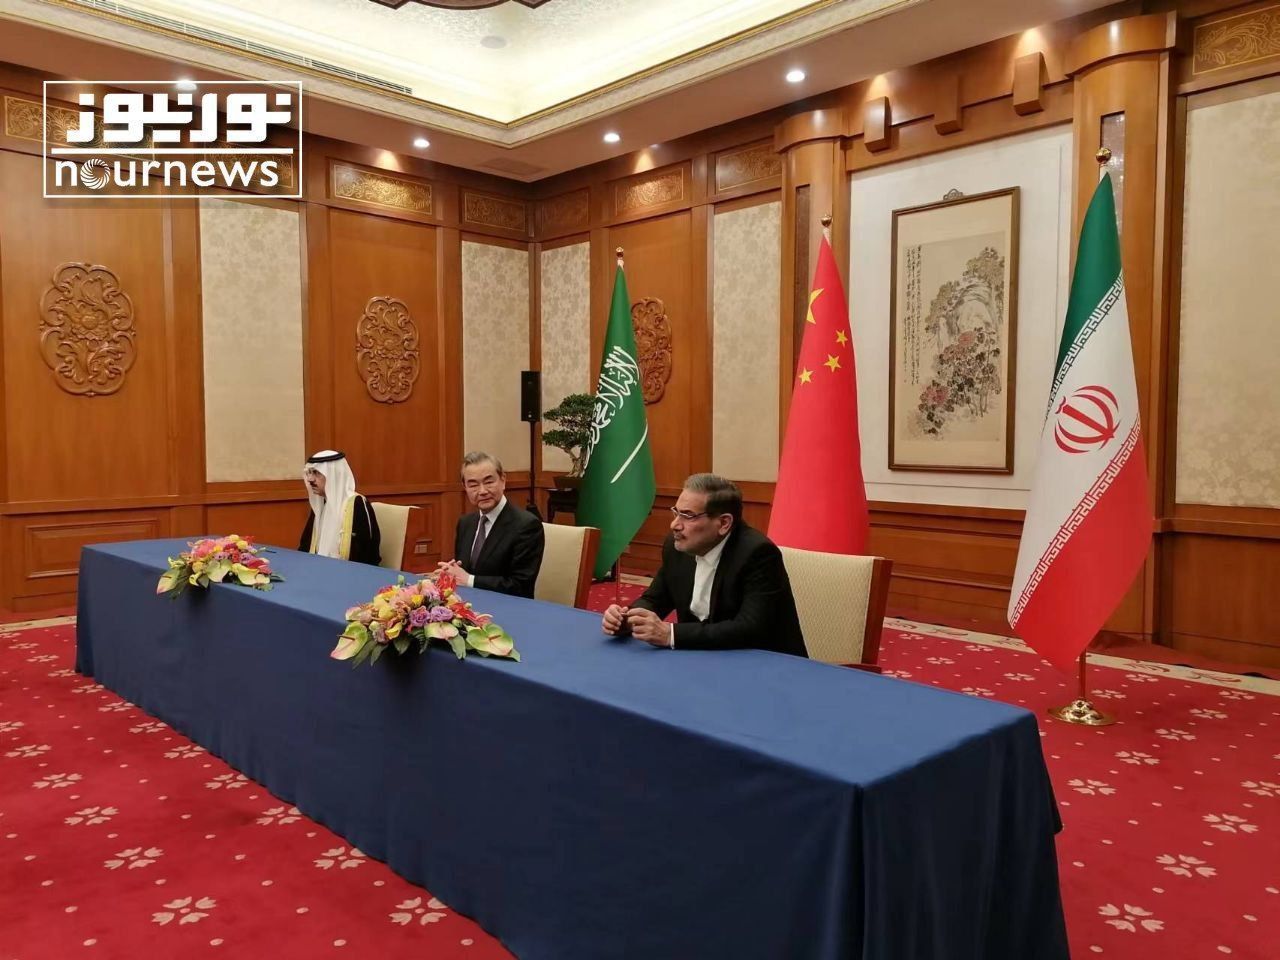 مراسم امضای بیانیه توافق جمهوری اسلامی ایران و عربستان سعودی برای از سرگیری روابط دو جانبه